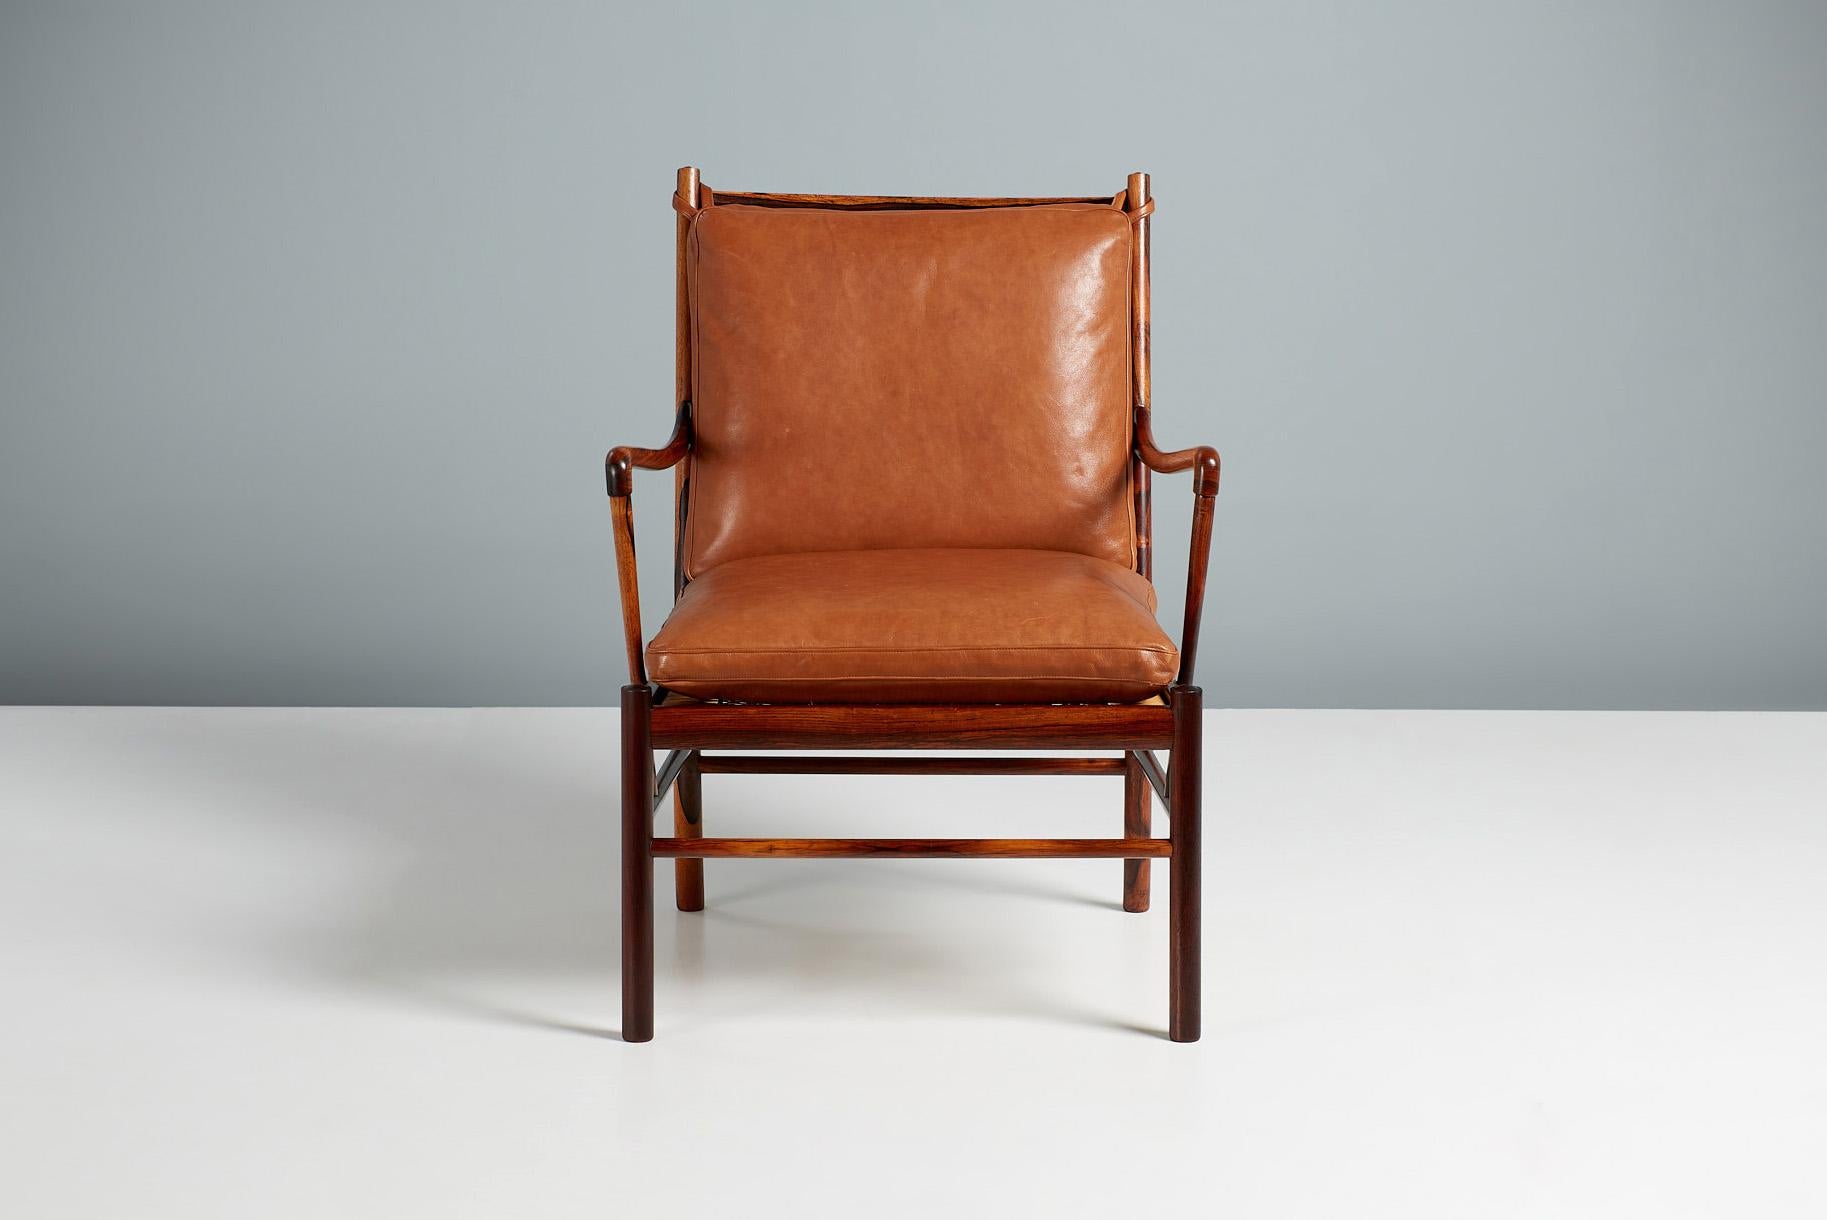 Ole Wanscher - Modell PJ-149 Kolonialer Stuhl, 1949

Ole Wanschers ikonischer Karrierehöhepunkt: der 1949 entworfene Colonial Chair, der in den 1950er Jahren von Tischlermeister Poul Jeppesen in Dänemark hergestellt wurde. Es bezieht sich auf Möbel